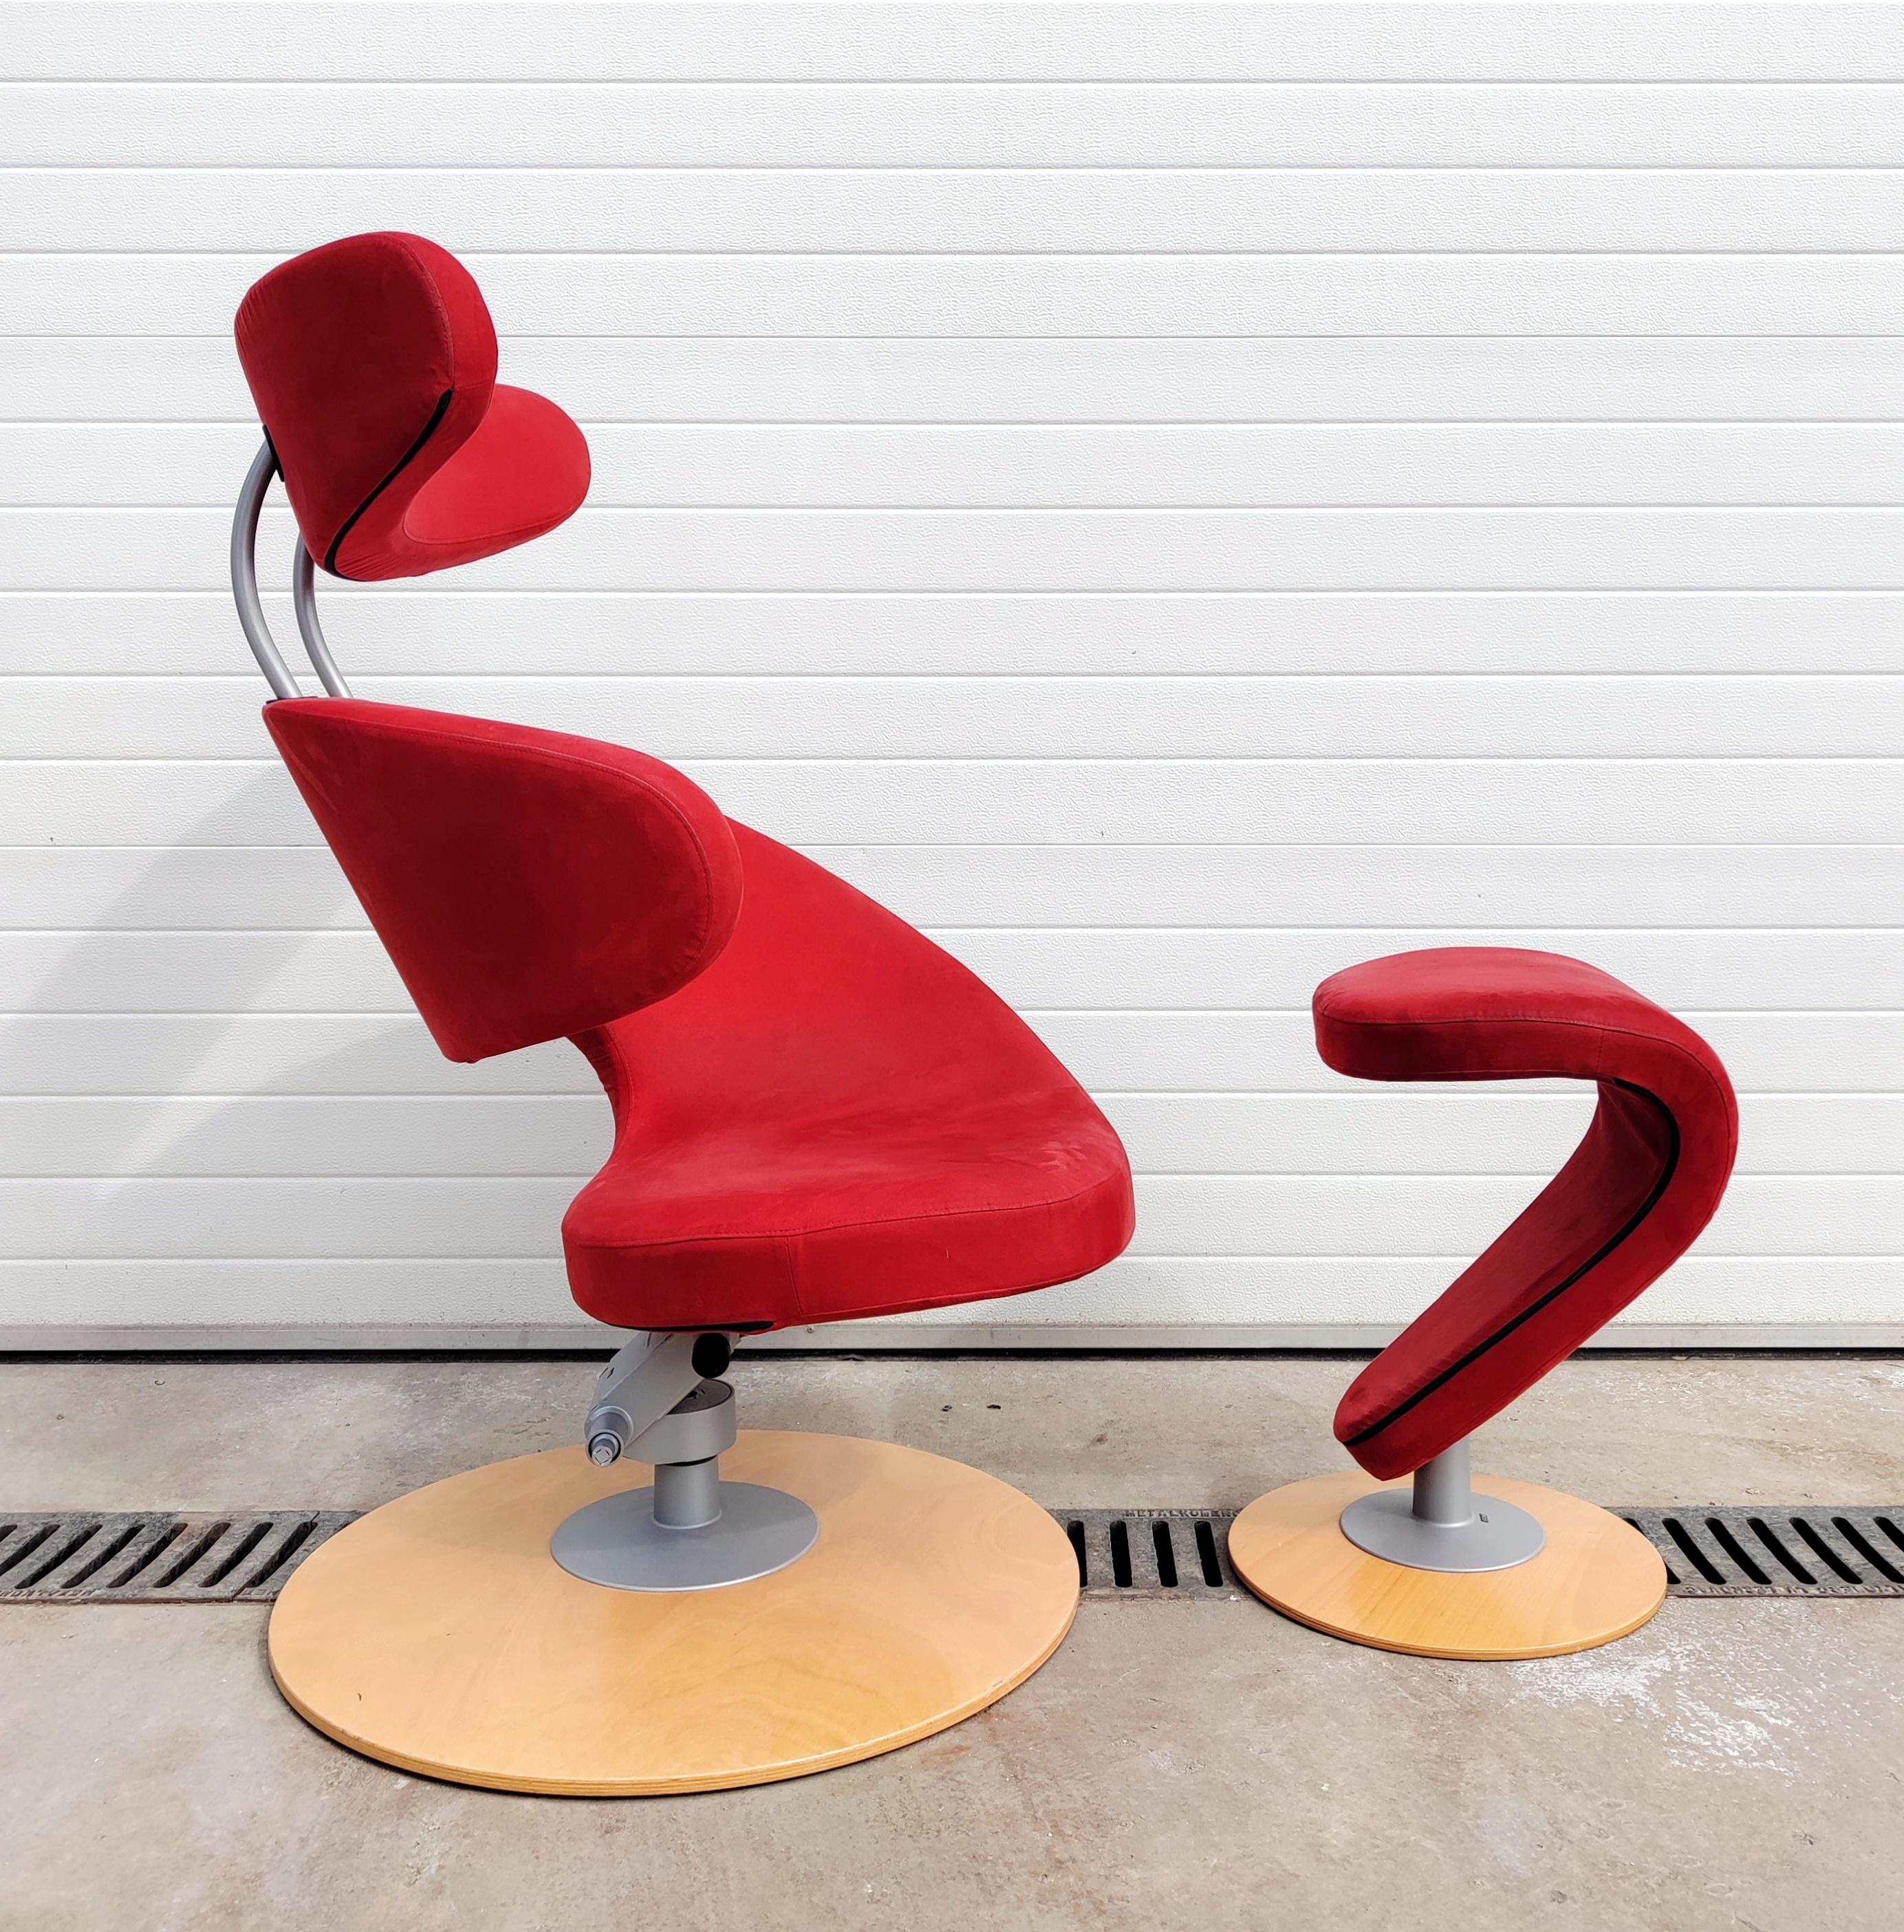 Dans cette annonce, vous trouverez un fauteuil postmoderniste appeléFauteuil Peel avec repose-pieds en tissu rouge. Il a été conçu par Olav Eldoy et fabriqué en Norvège en 2002. Il est doté d'une base ronde en bois et d'une construction en